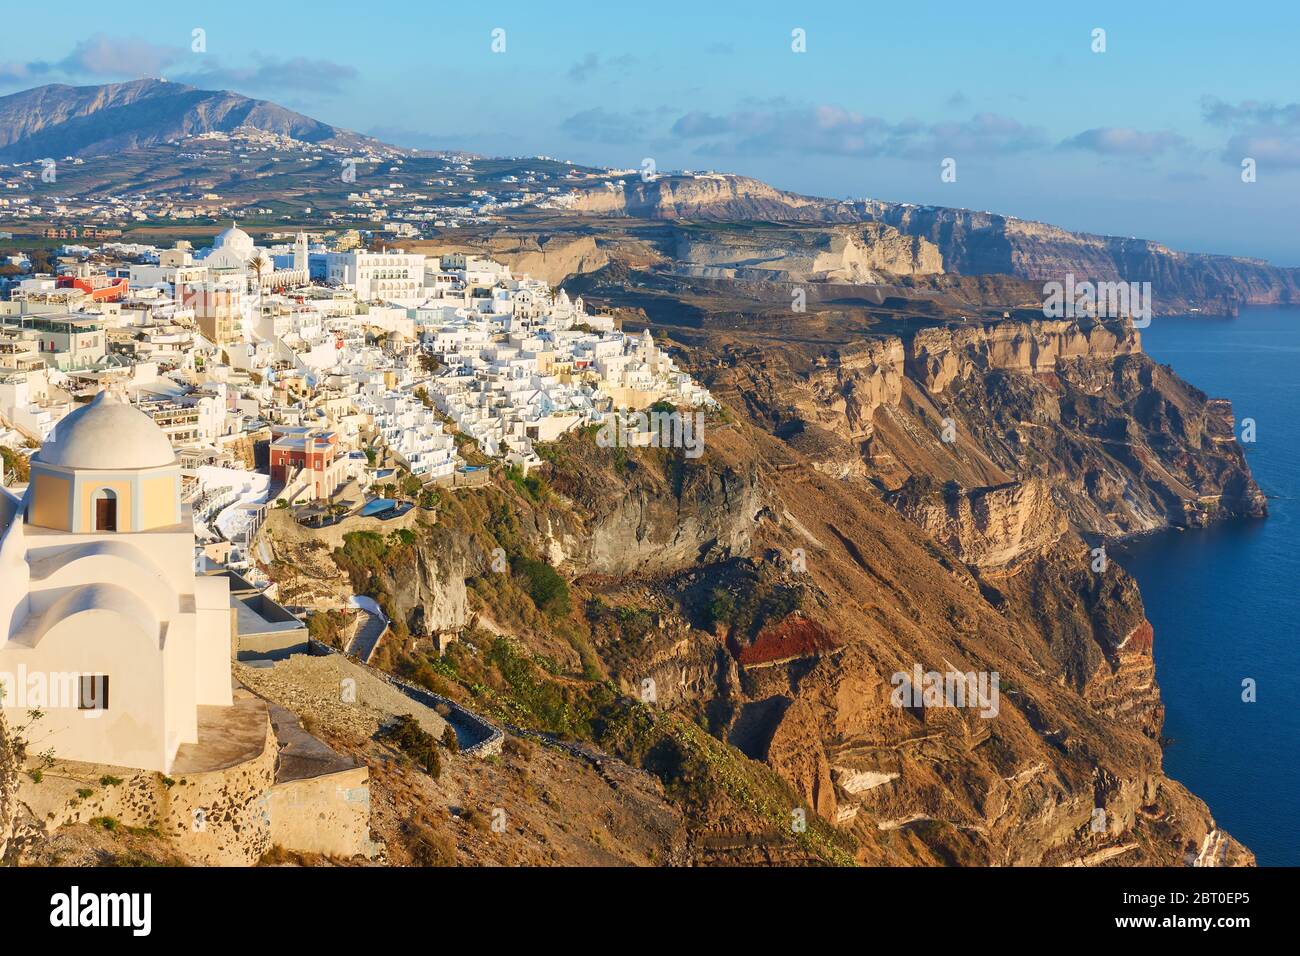 Vue sur l'île de Santorin avec la ville de Thira sur la côte rocheuse, Grèce -- paysage grec Banque D'Images